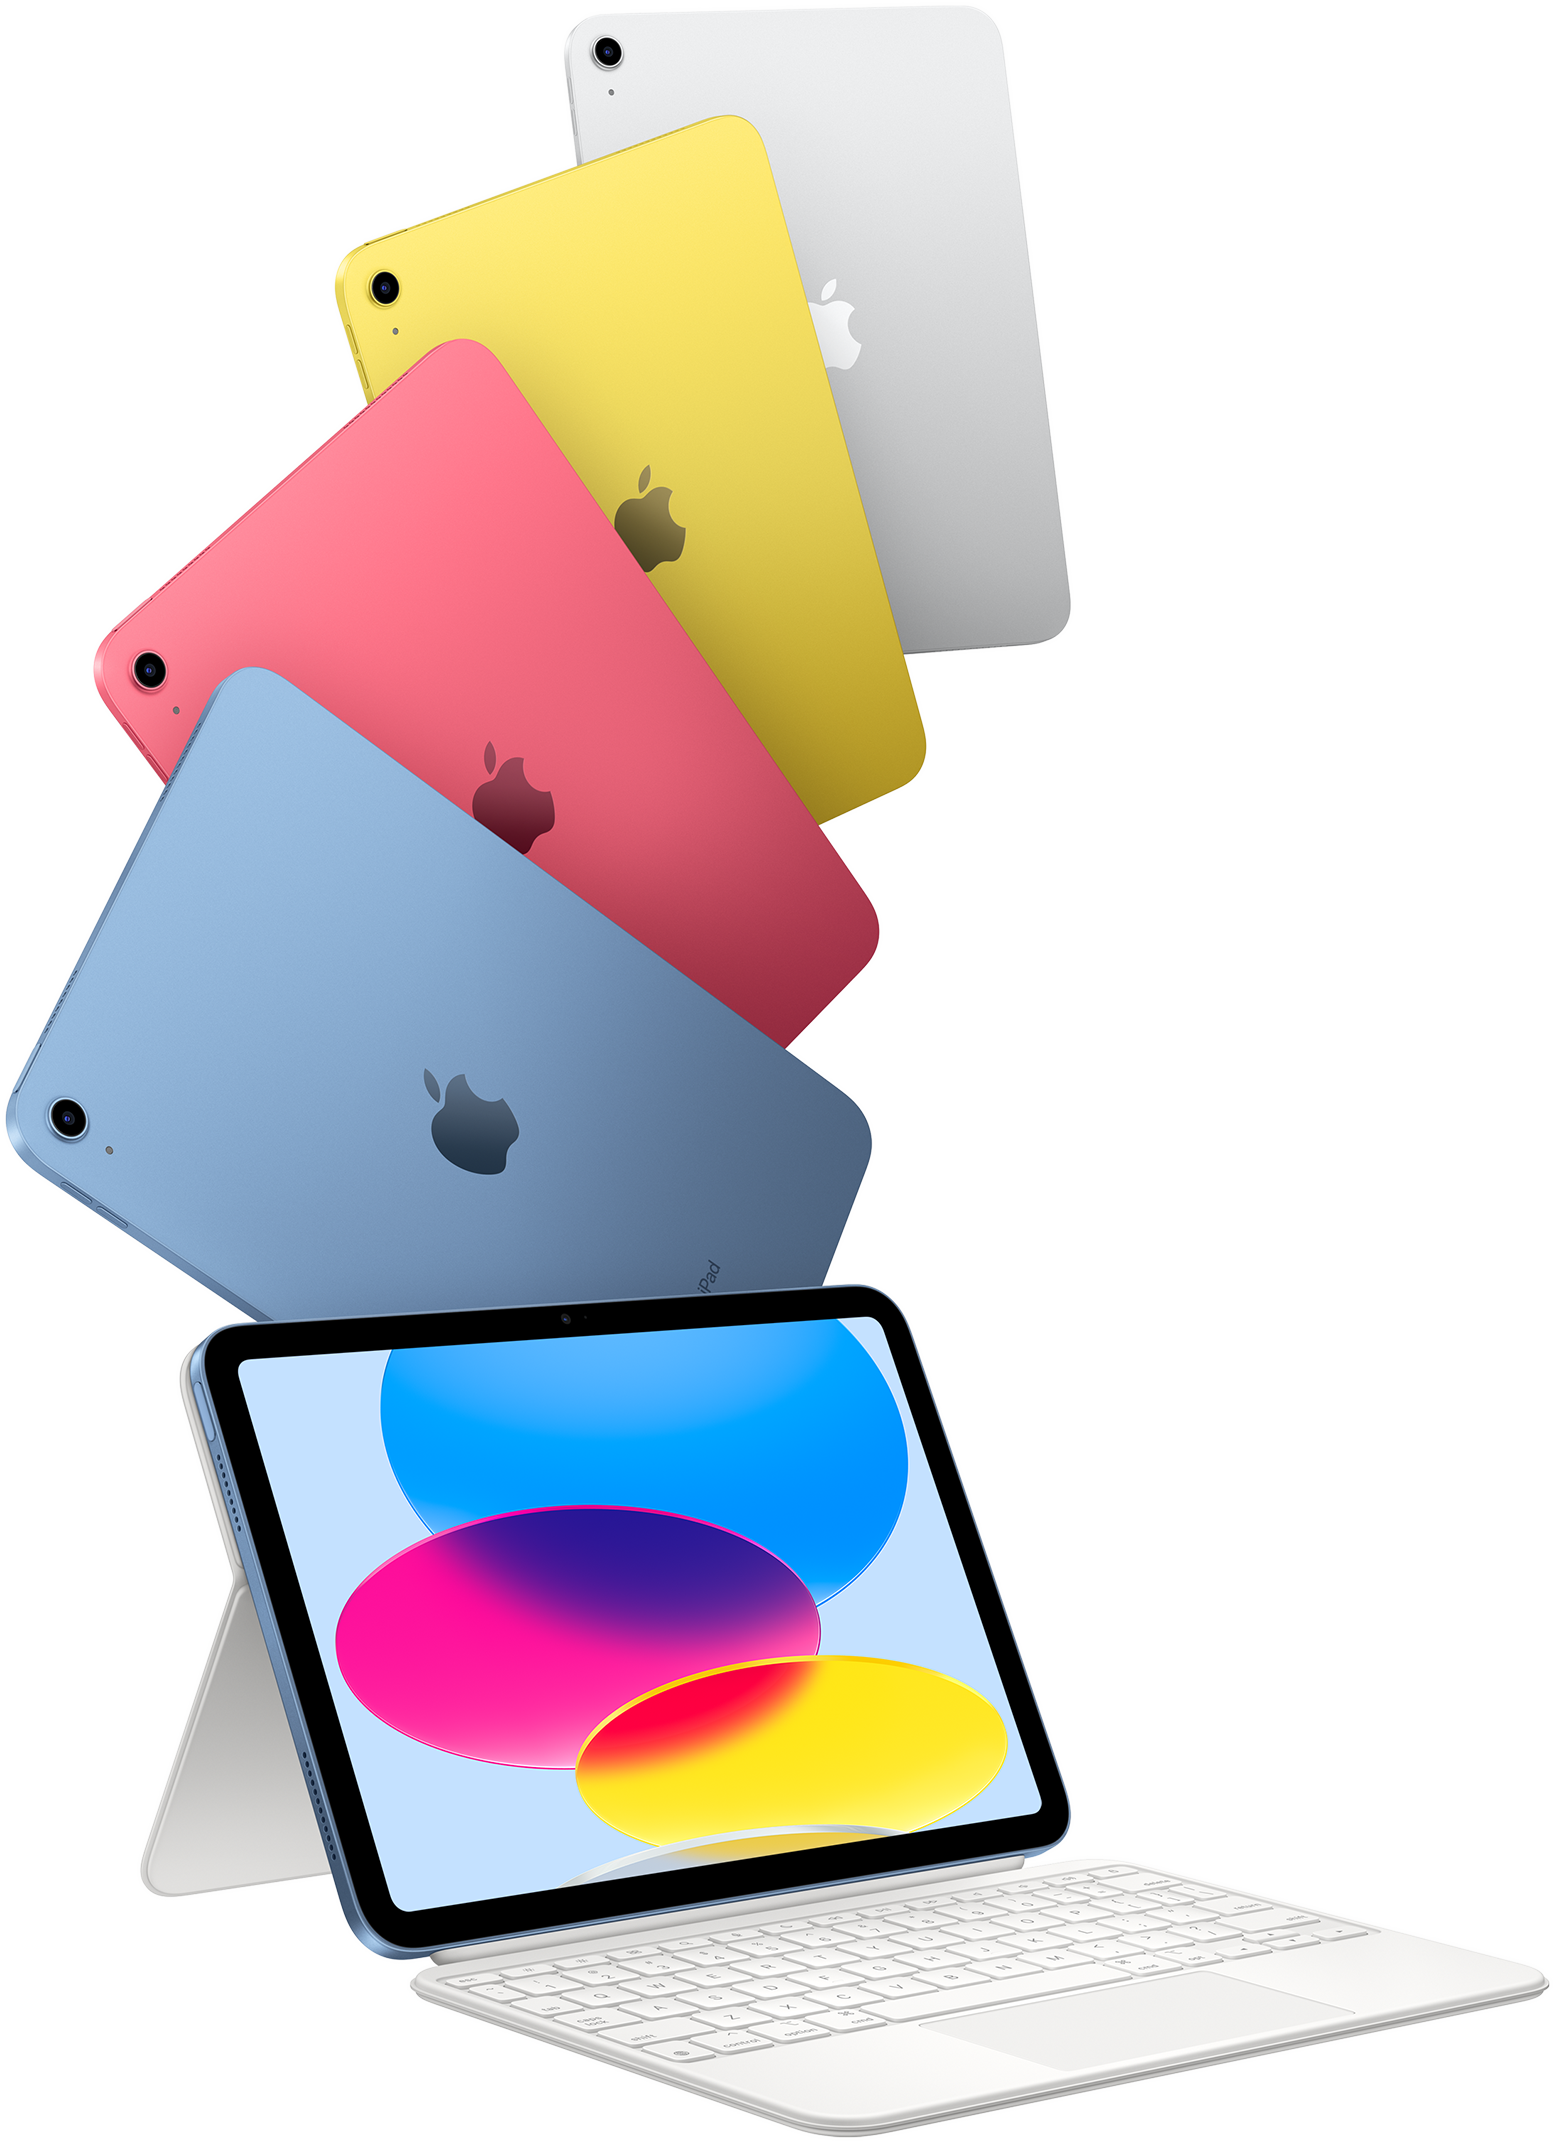 Apple iPad — iPad Air, iPad Pro, iPad